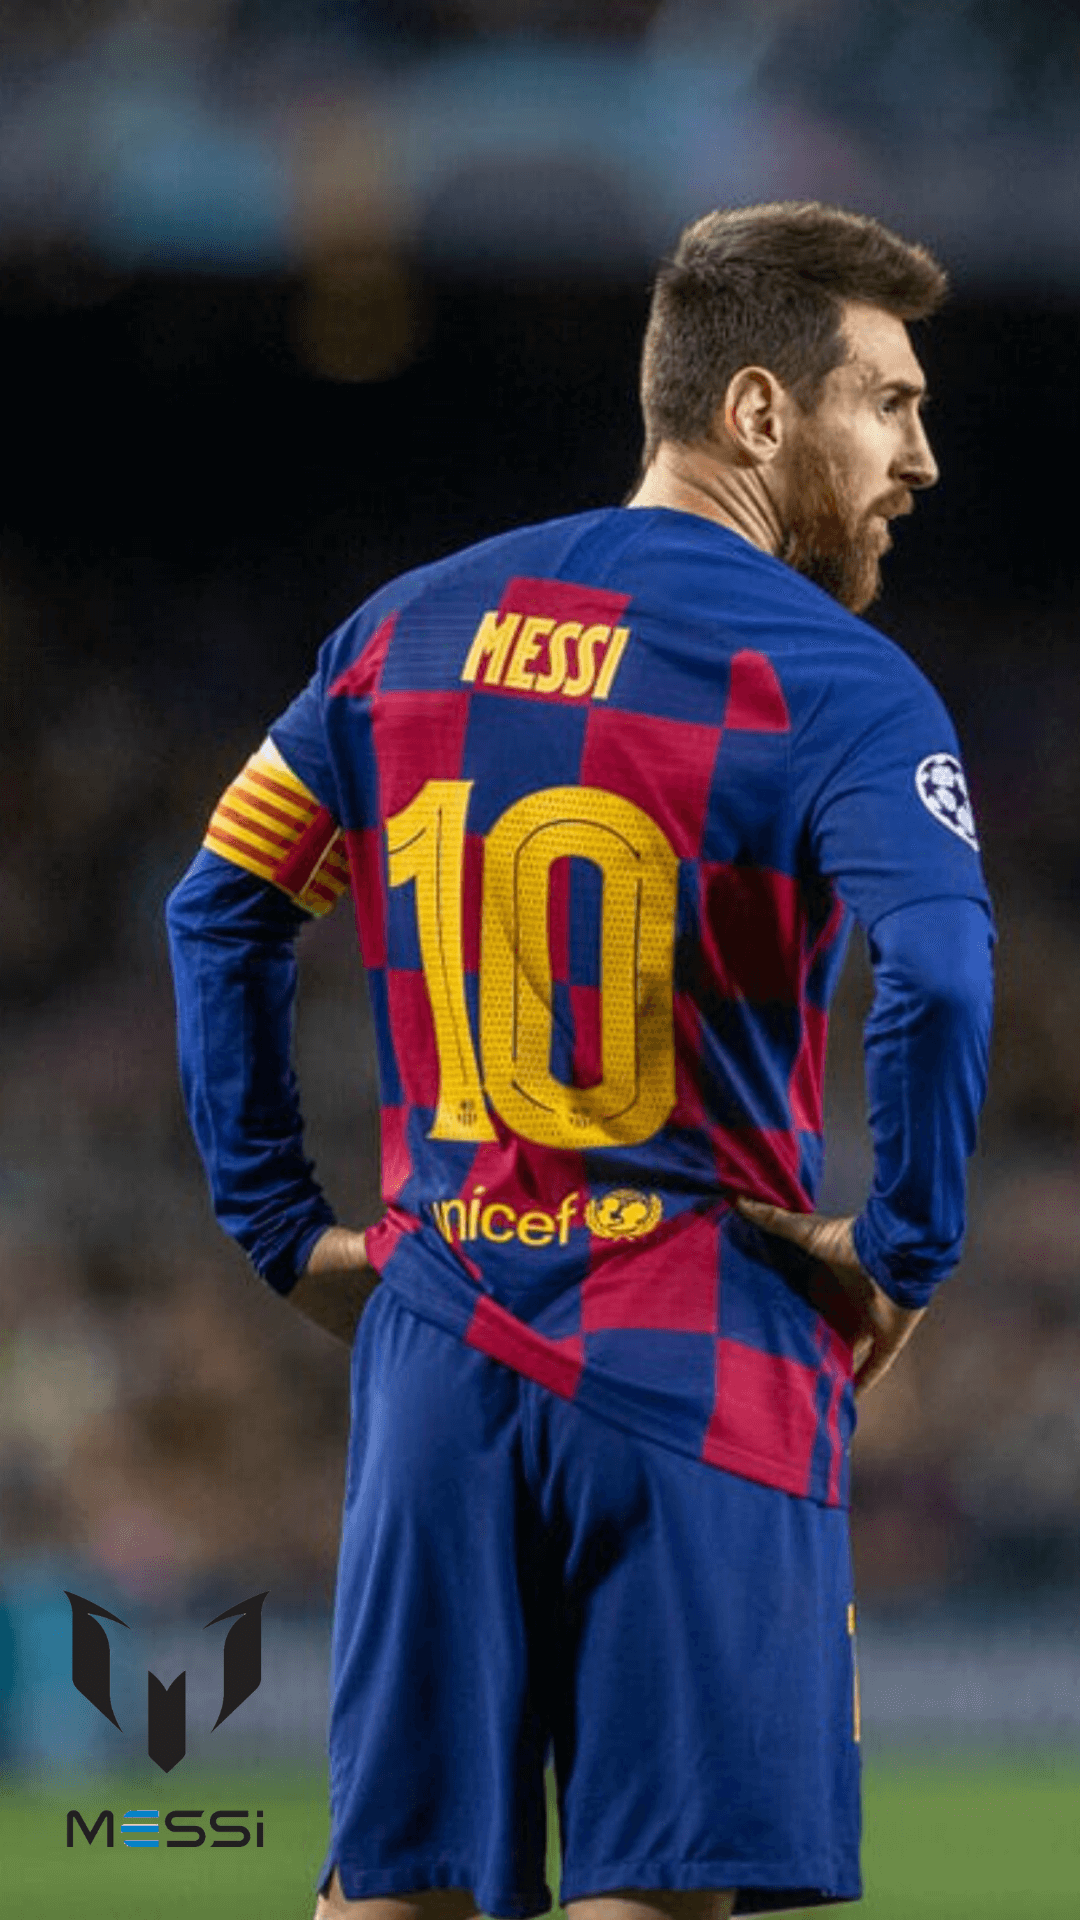 Những bức ảnh nền mobile 4K của Messi vào năm 2020 sẽ khiến các fan cuồng của anh ấy chìm đắm trong niềm đam mê. Hãy khám phá những bức hình chất lượng cao này để tận hưởng sự tuyệt vời của anh ấy trên điện thoại của bạn.